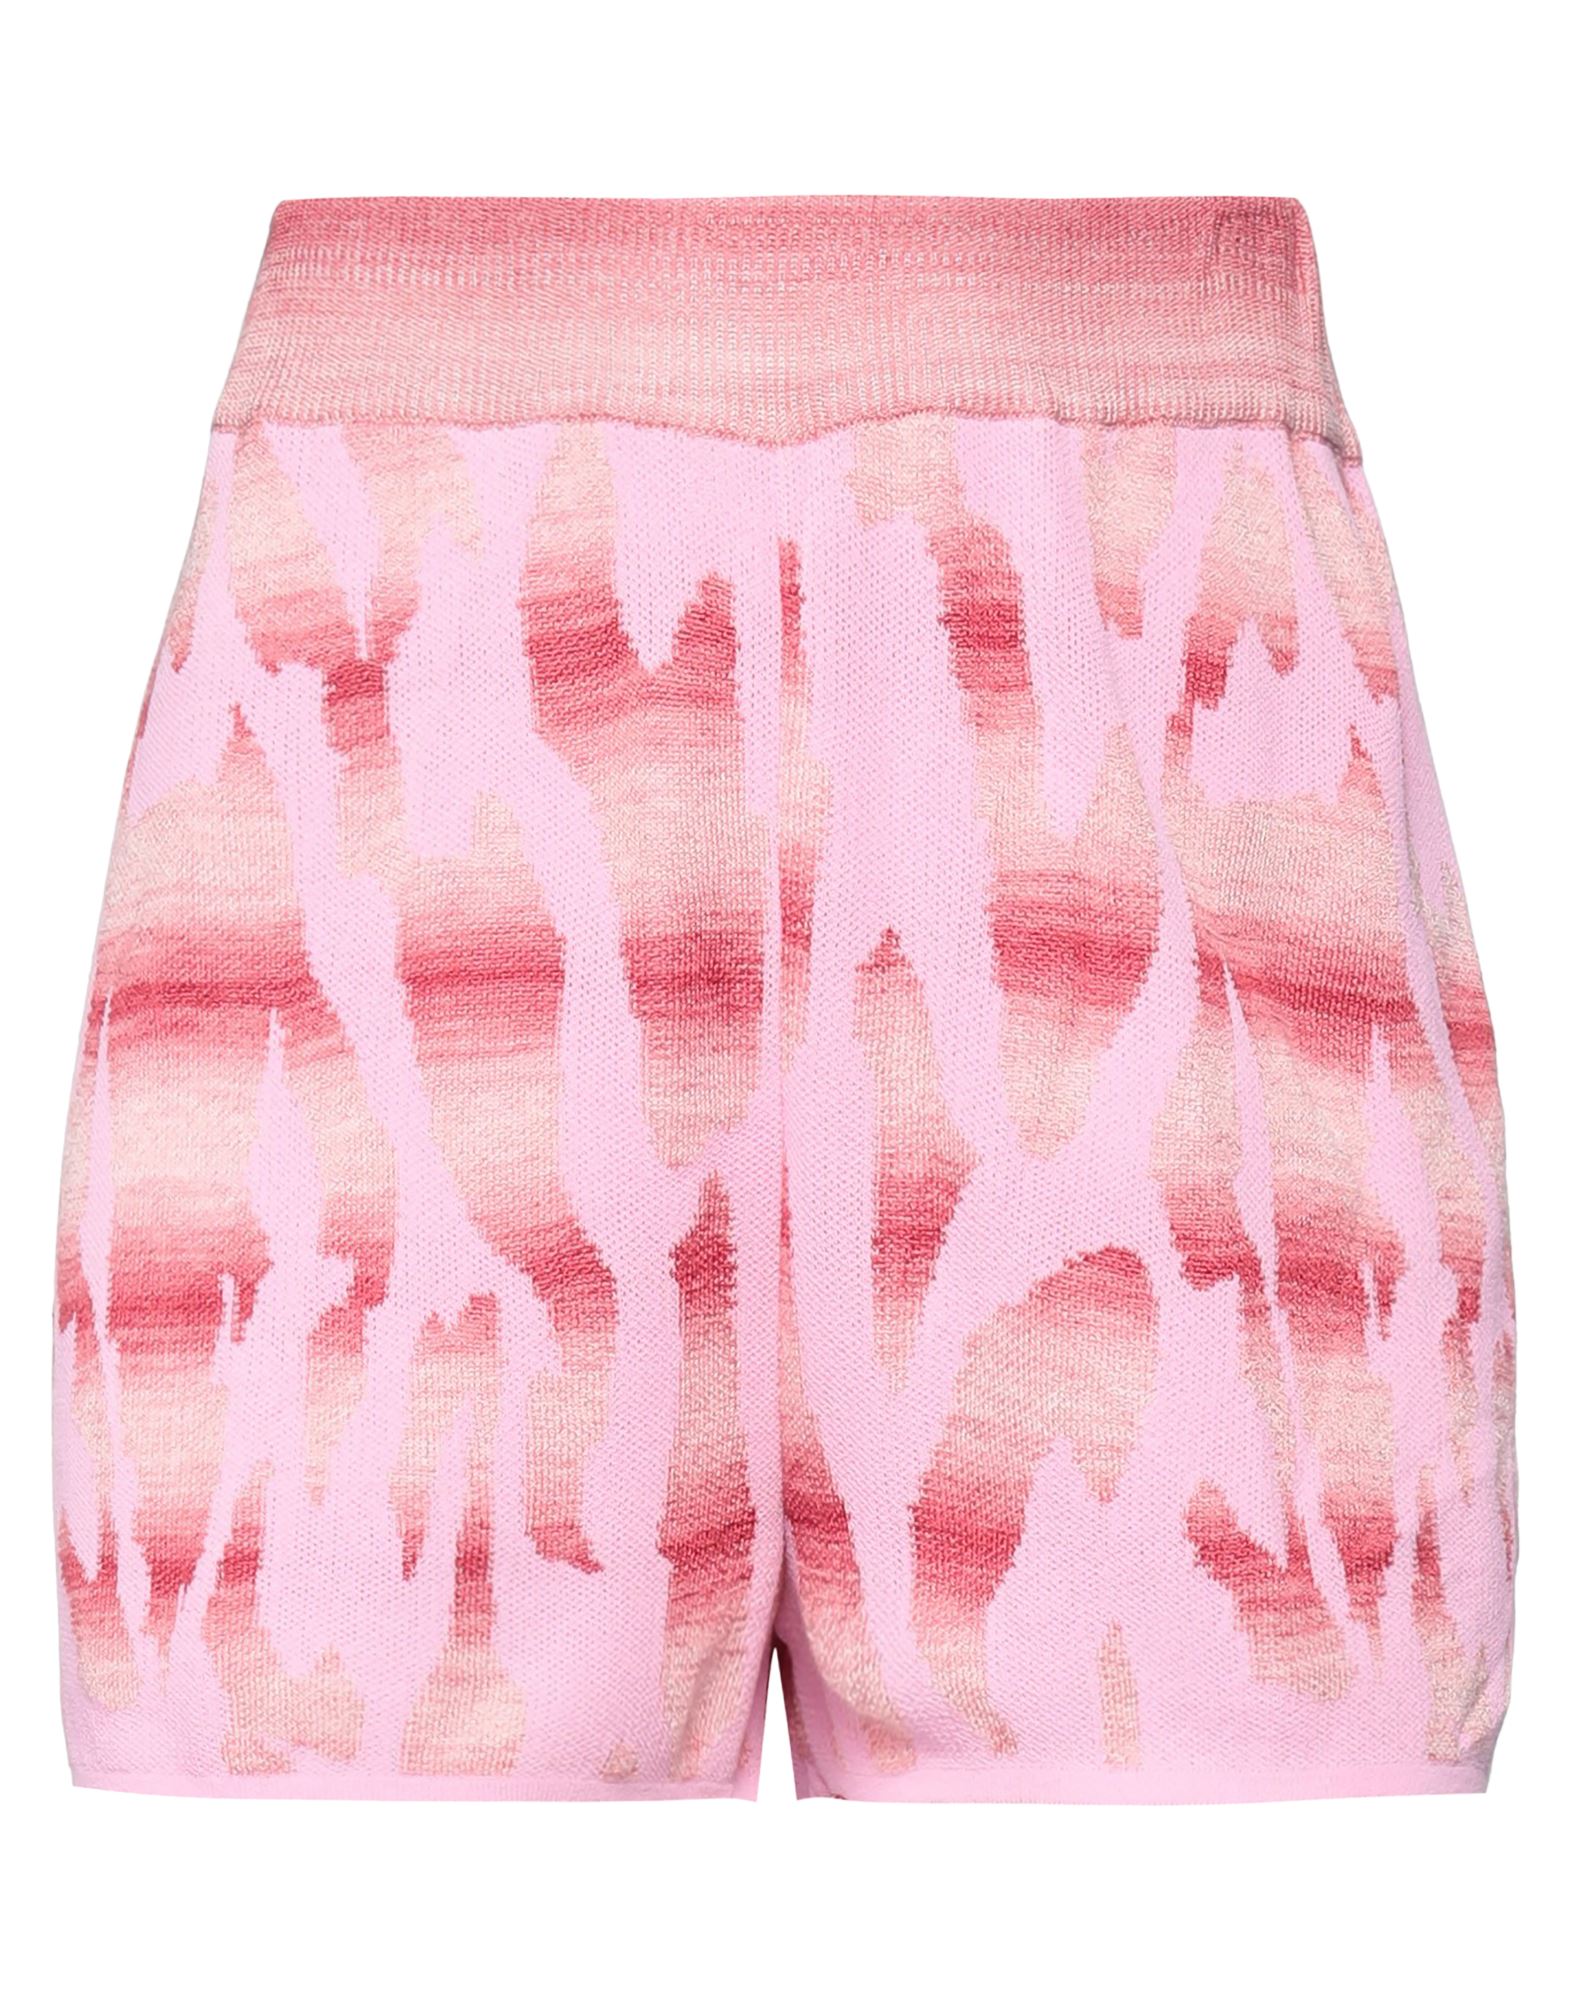 Viki-and Woman Shorts & Bermuda Shorts Pink Size 4 Viscose, Polyamide